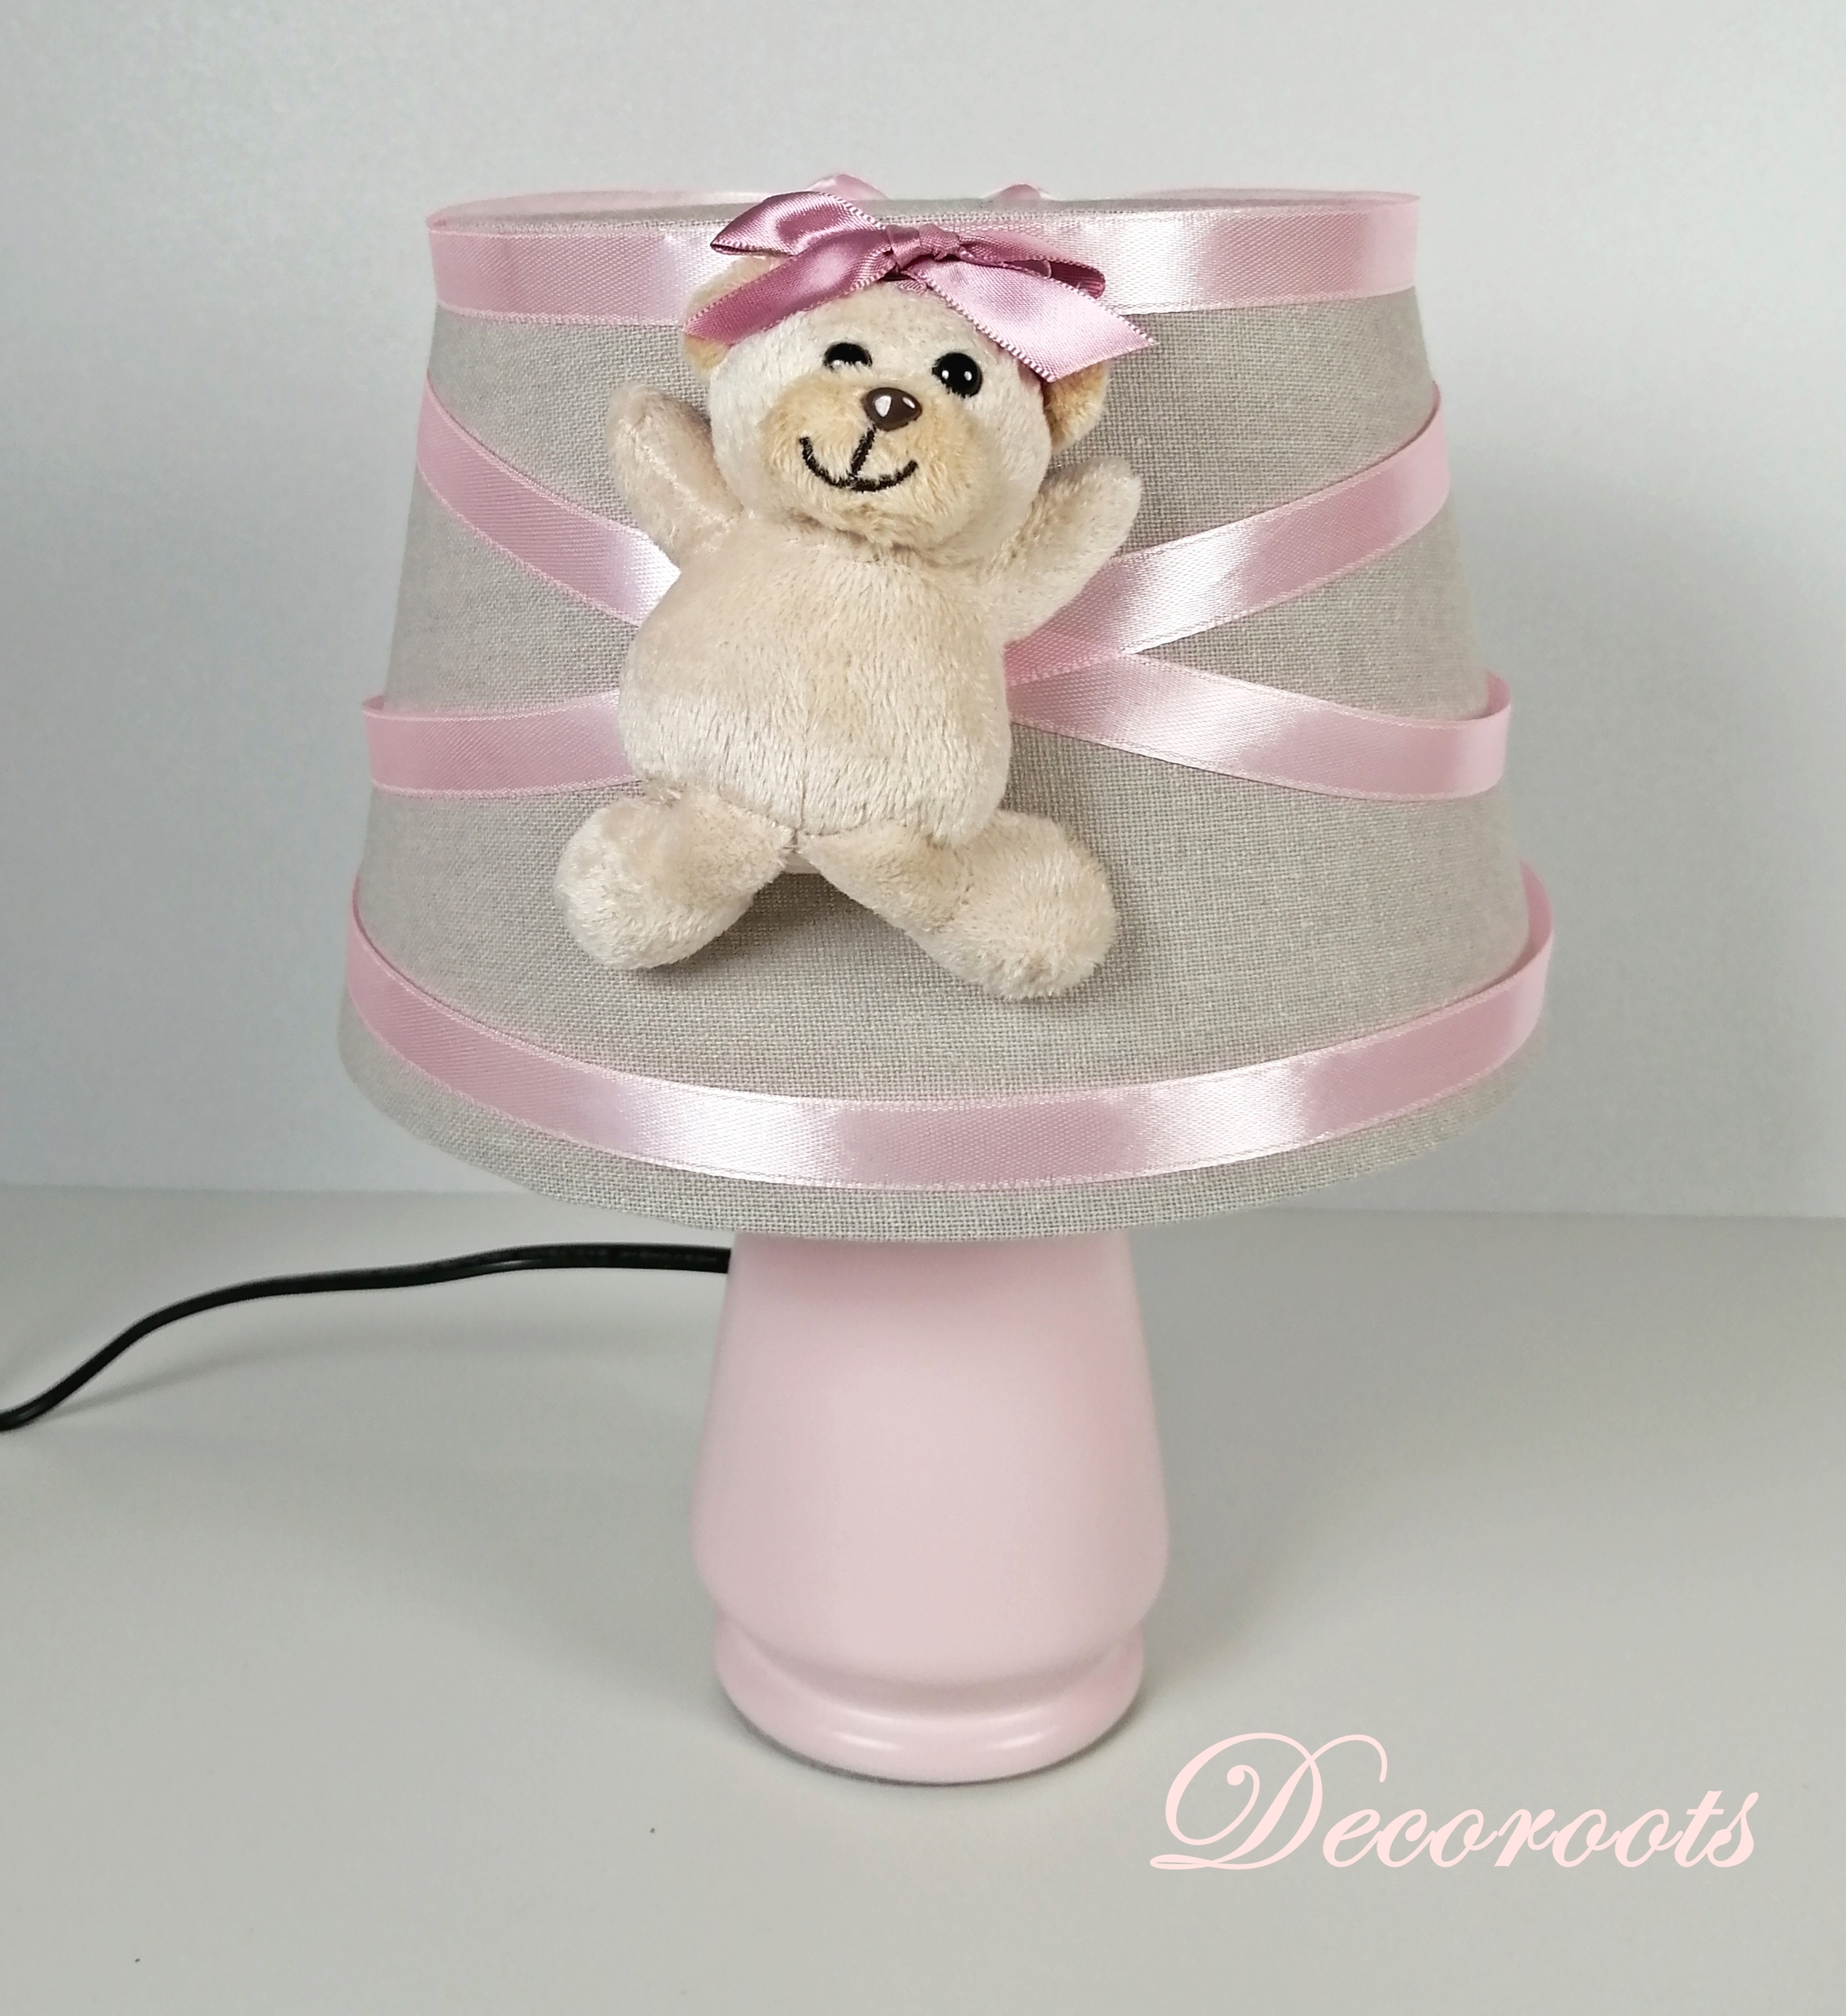 lampe-chevet-enfant-bebe-ours-fille-beige-rose-vieux-blanc-cadeau-naissance-artisanale taupe